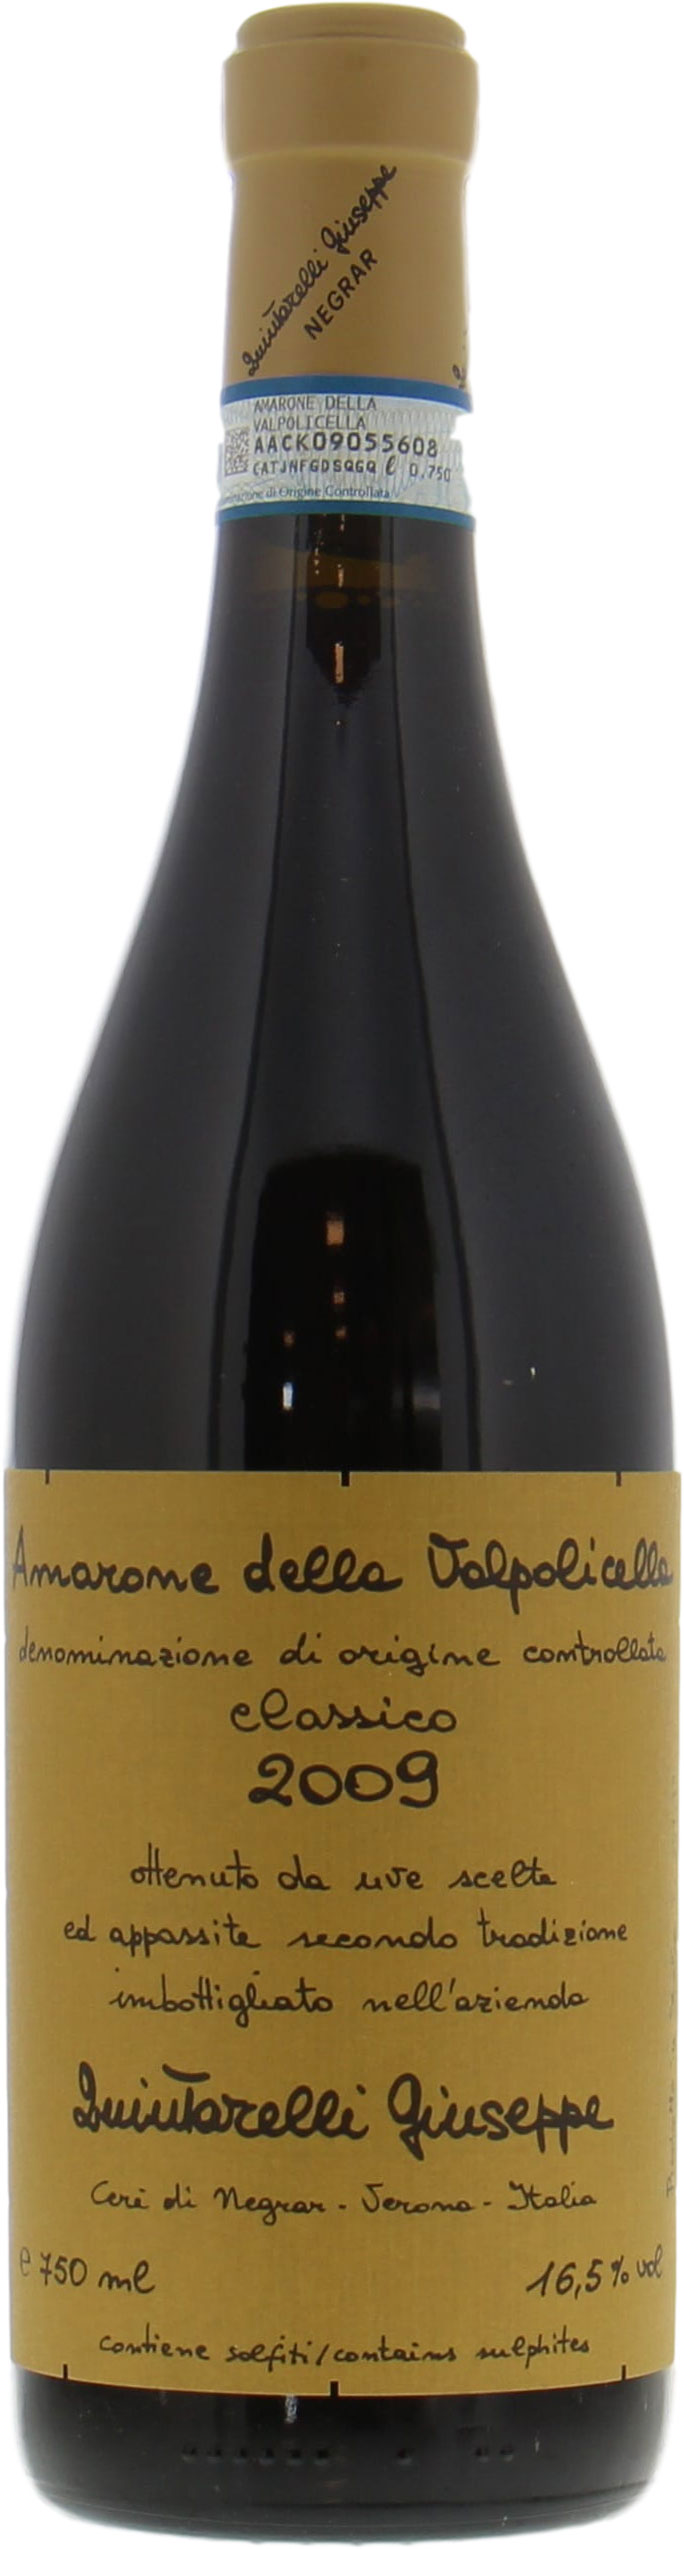 Quintarelli  - Amarone della Valpolicella Classico 2009 Perfect